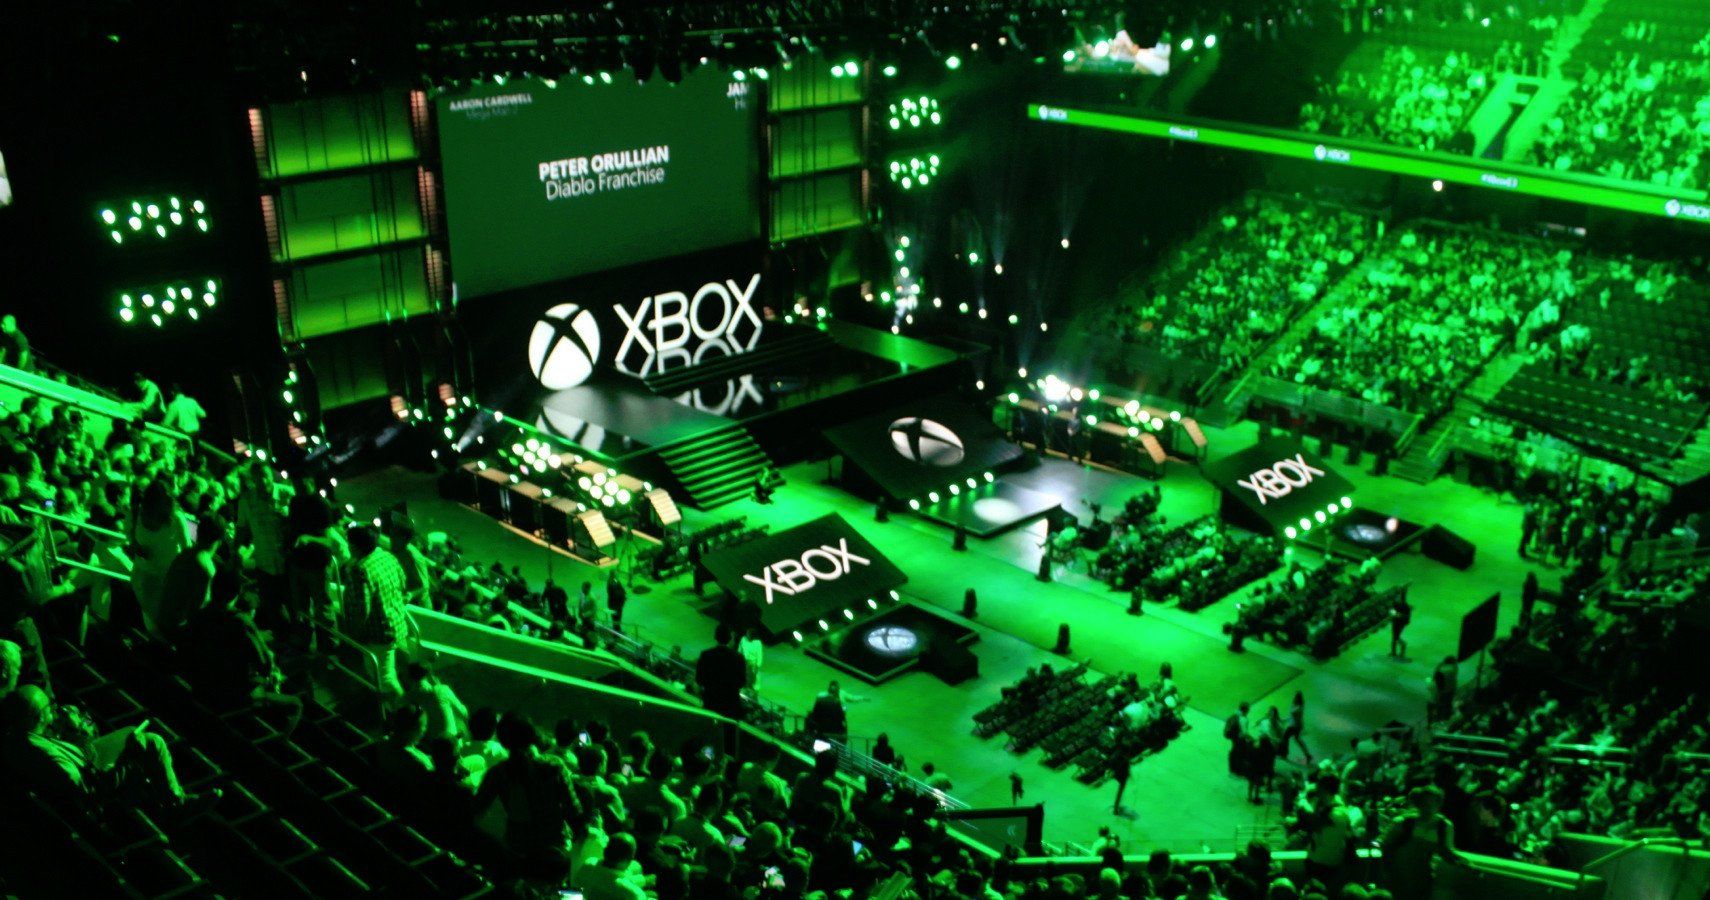 Microsoft's E3 conference hall